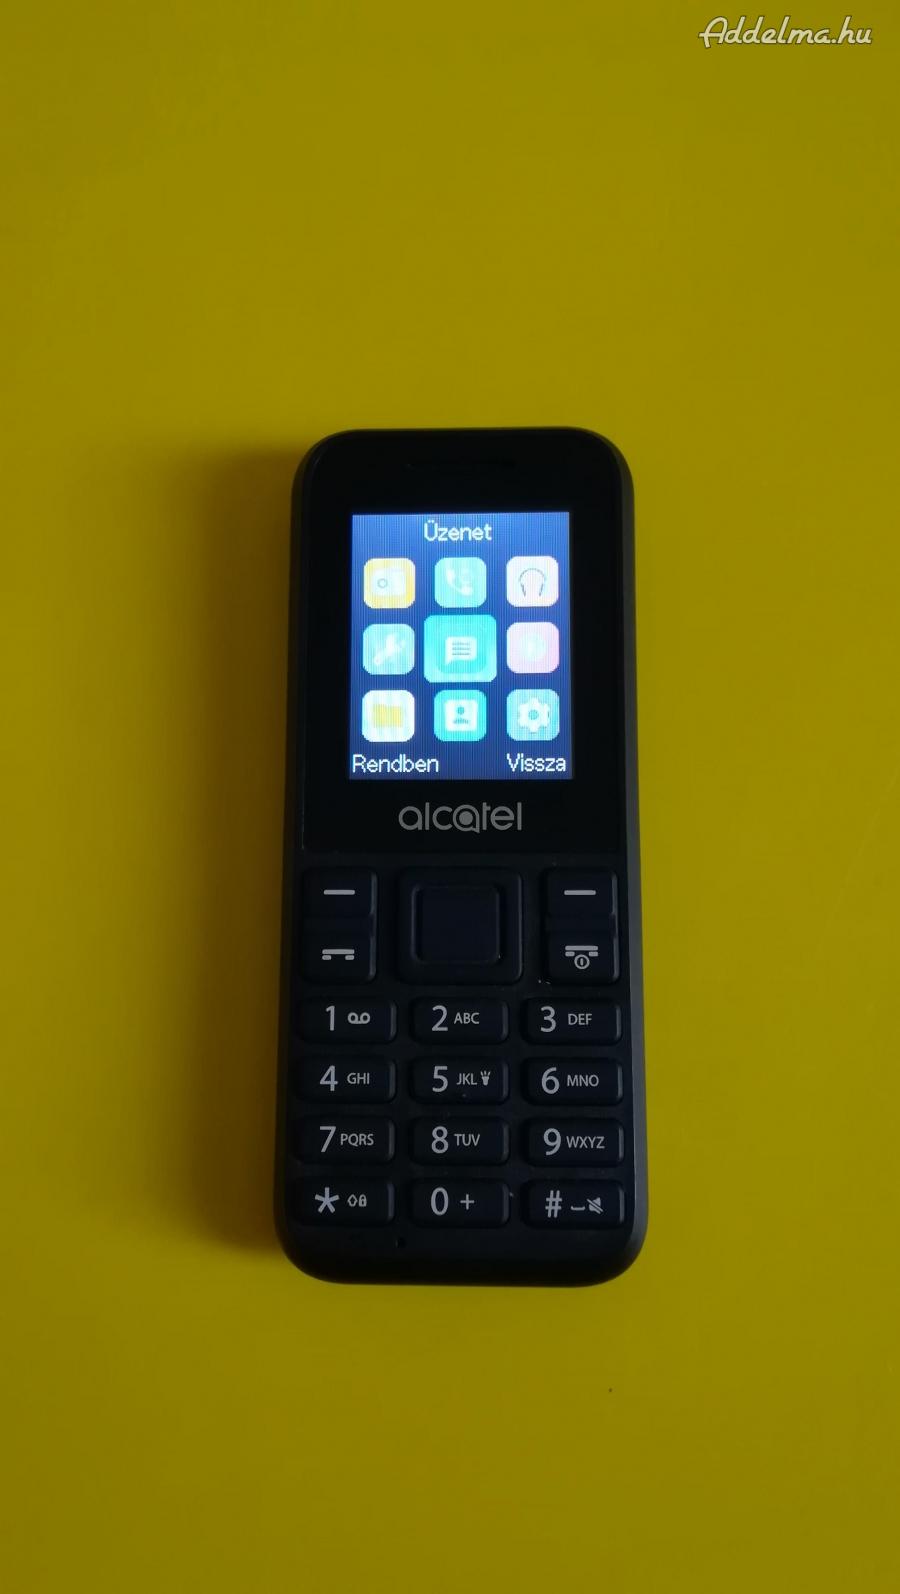 Alcatel 1066g mobil, jó és vodás .